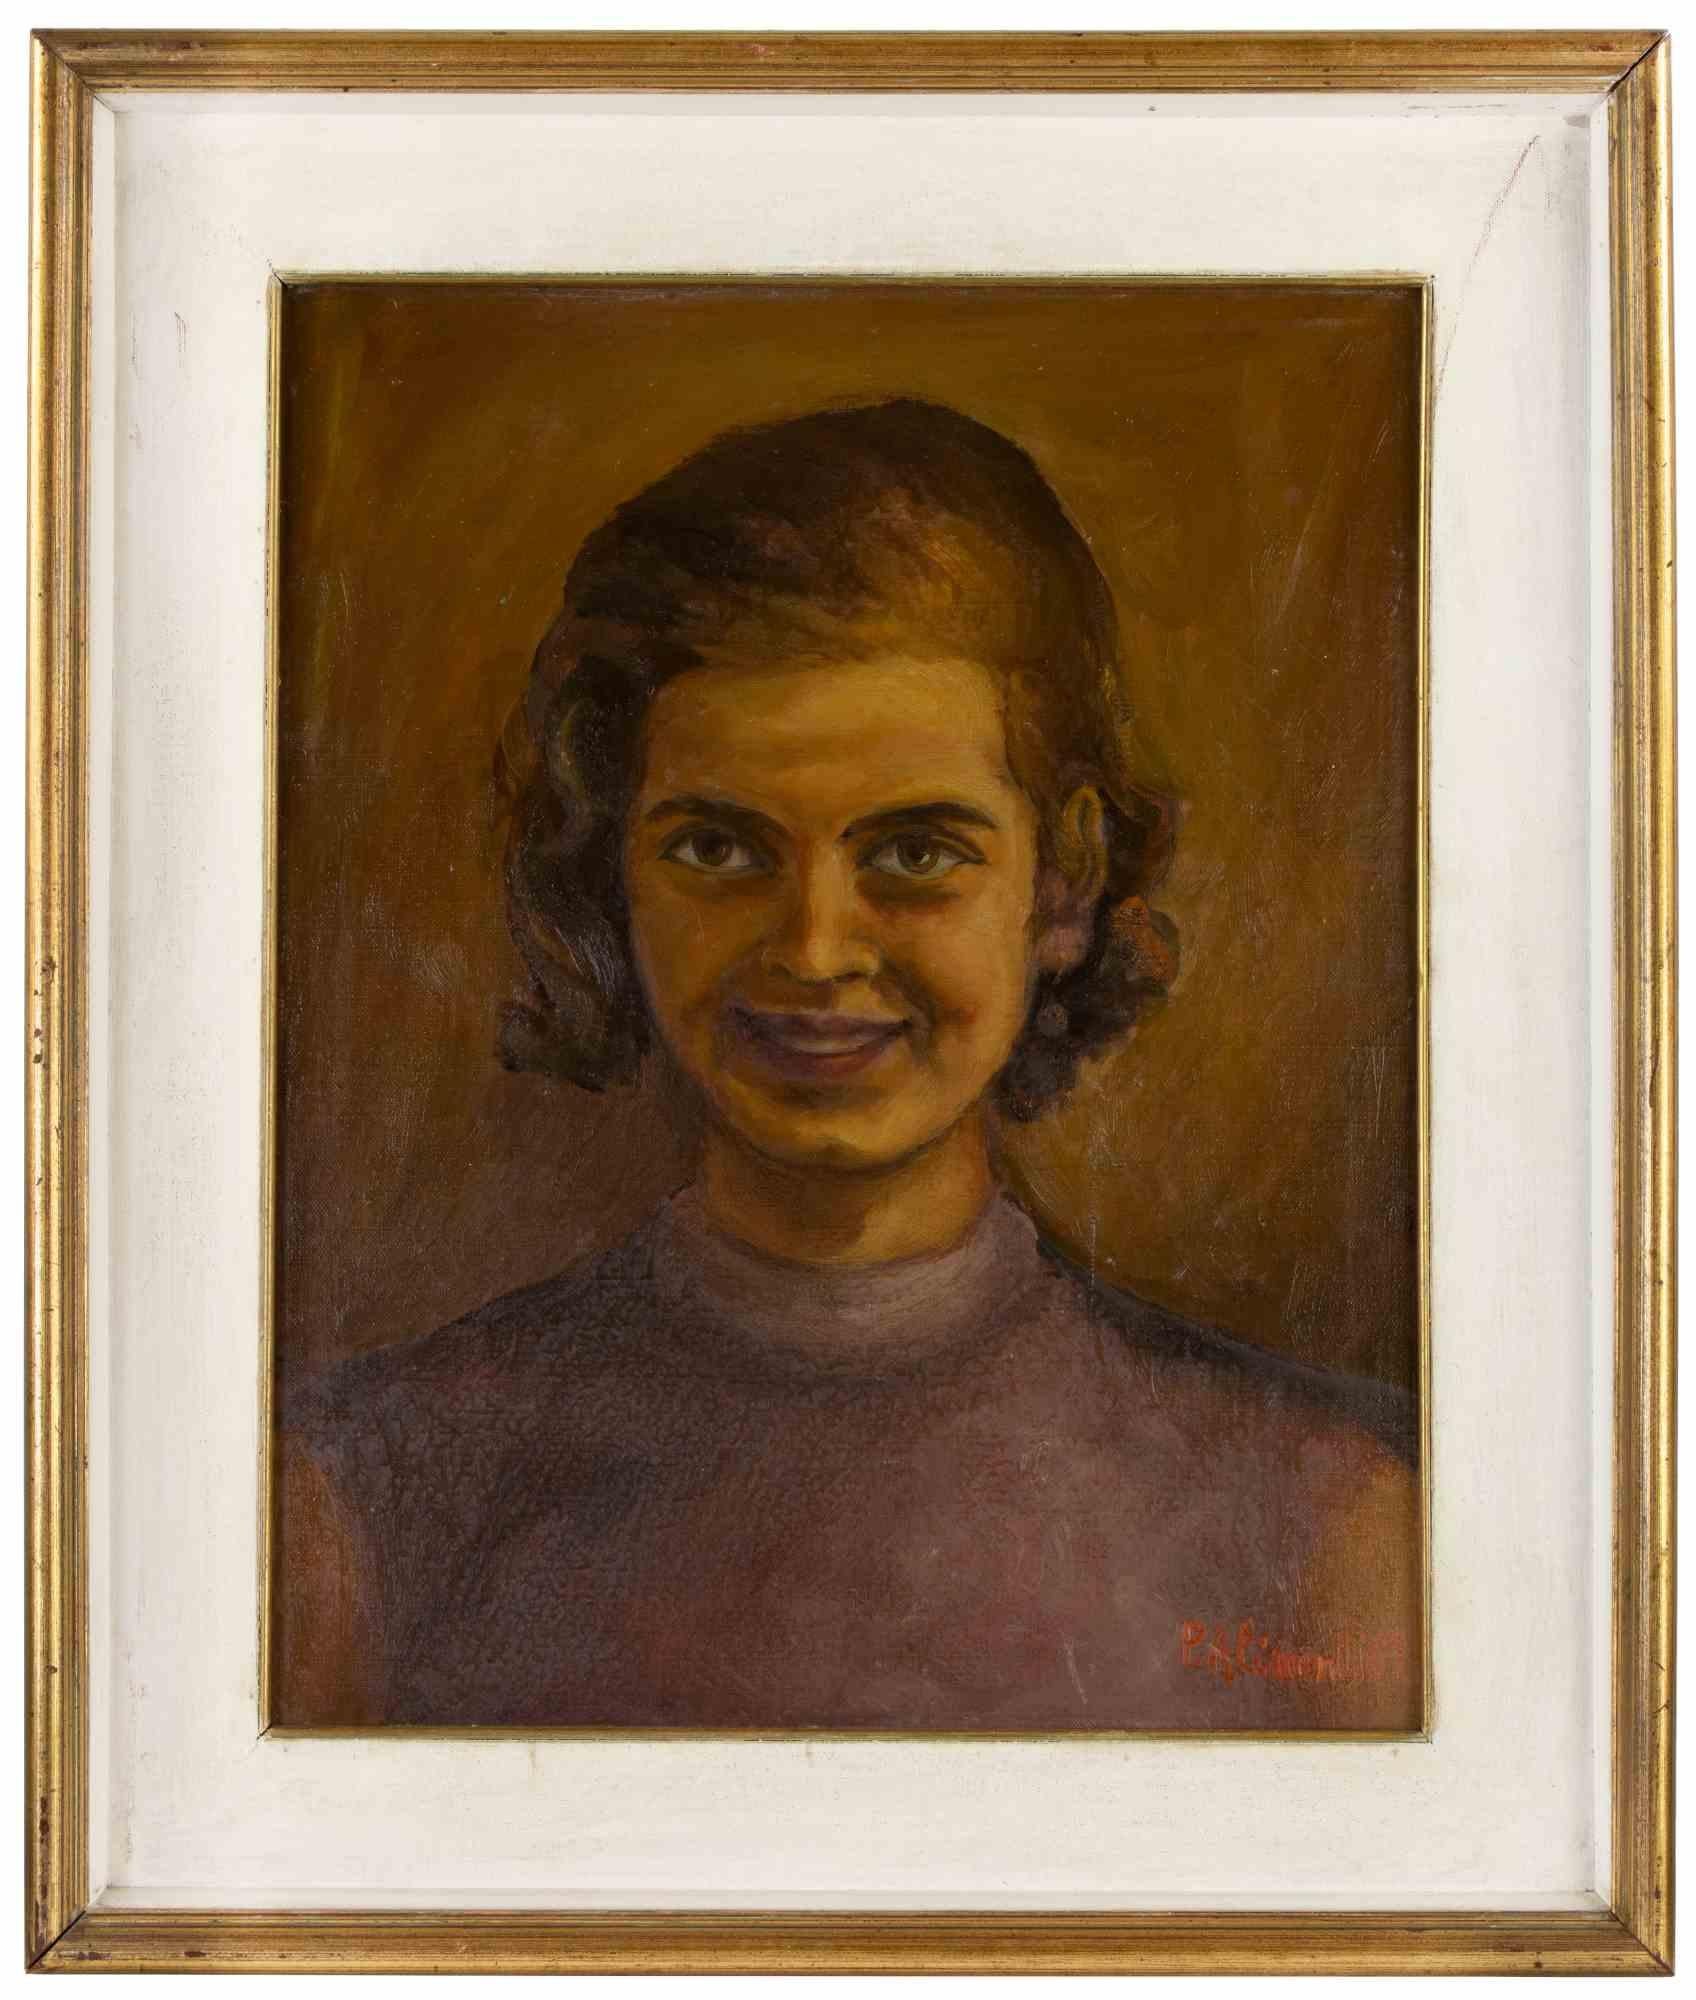 Portrait d'une jeune fille est une œuvre d'art réalisée par  Pietro Alimonti, 1969.

Huile sur toile. 

49 x 39 cm ; 88 x 68 cm.

Signé dans la marge inférieure gauche. 

Bonnes conditions !

 